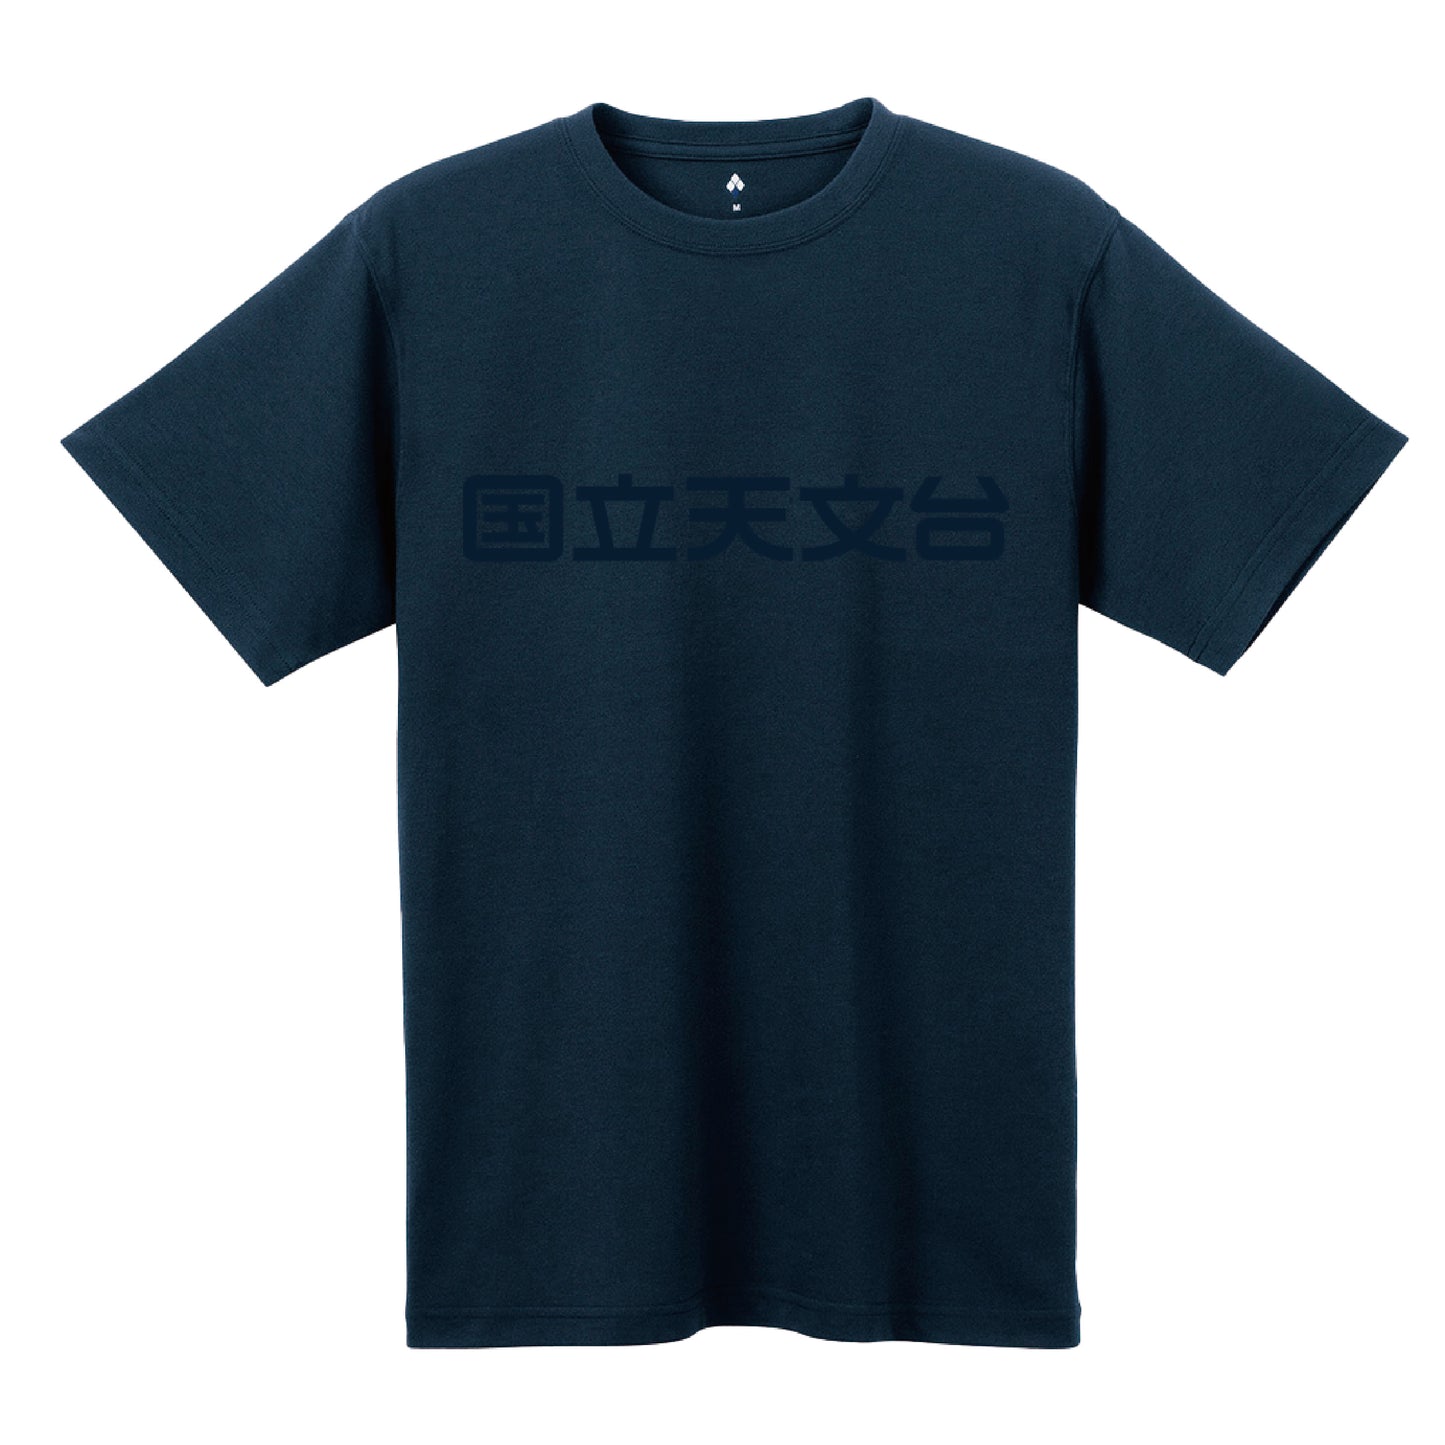 国立天文台 NAOJ漢字 ロゴマーク WIC. Tシャツ ネイビー x ネイビー S 00